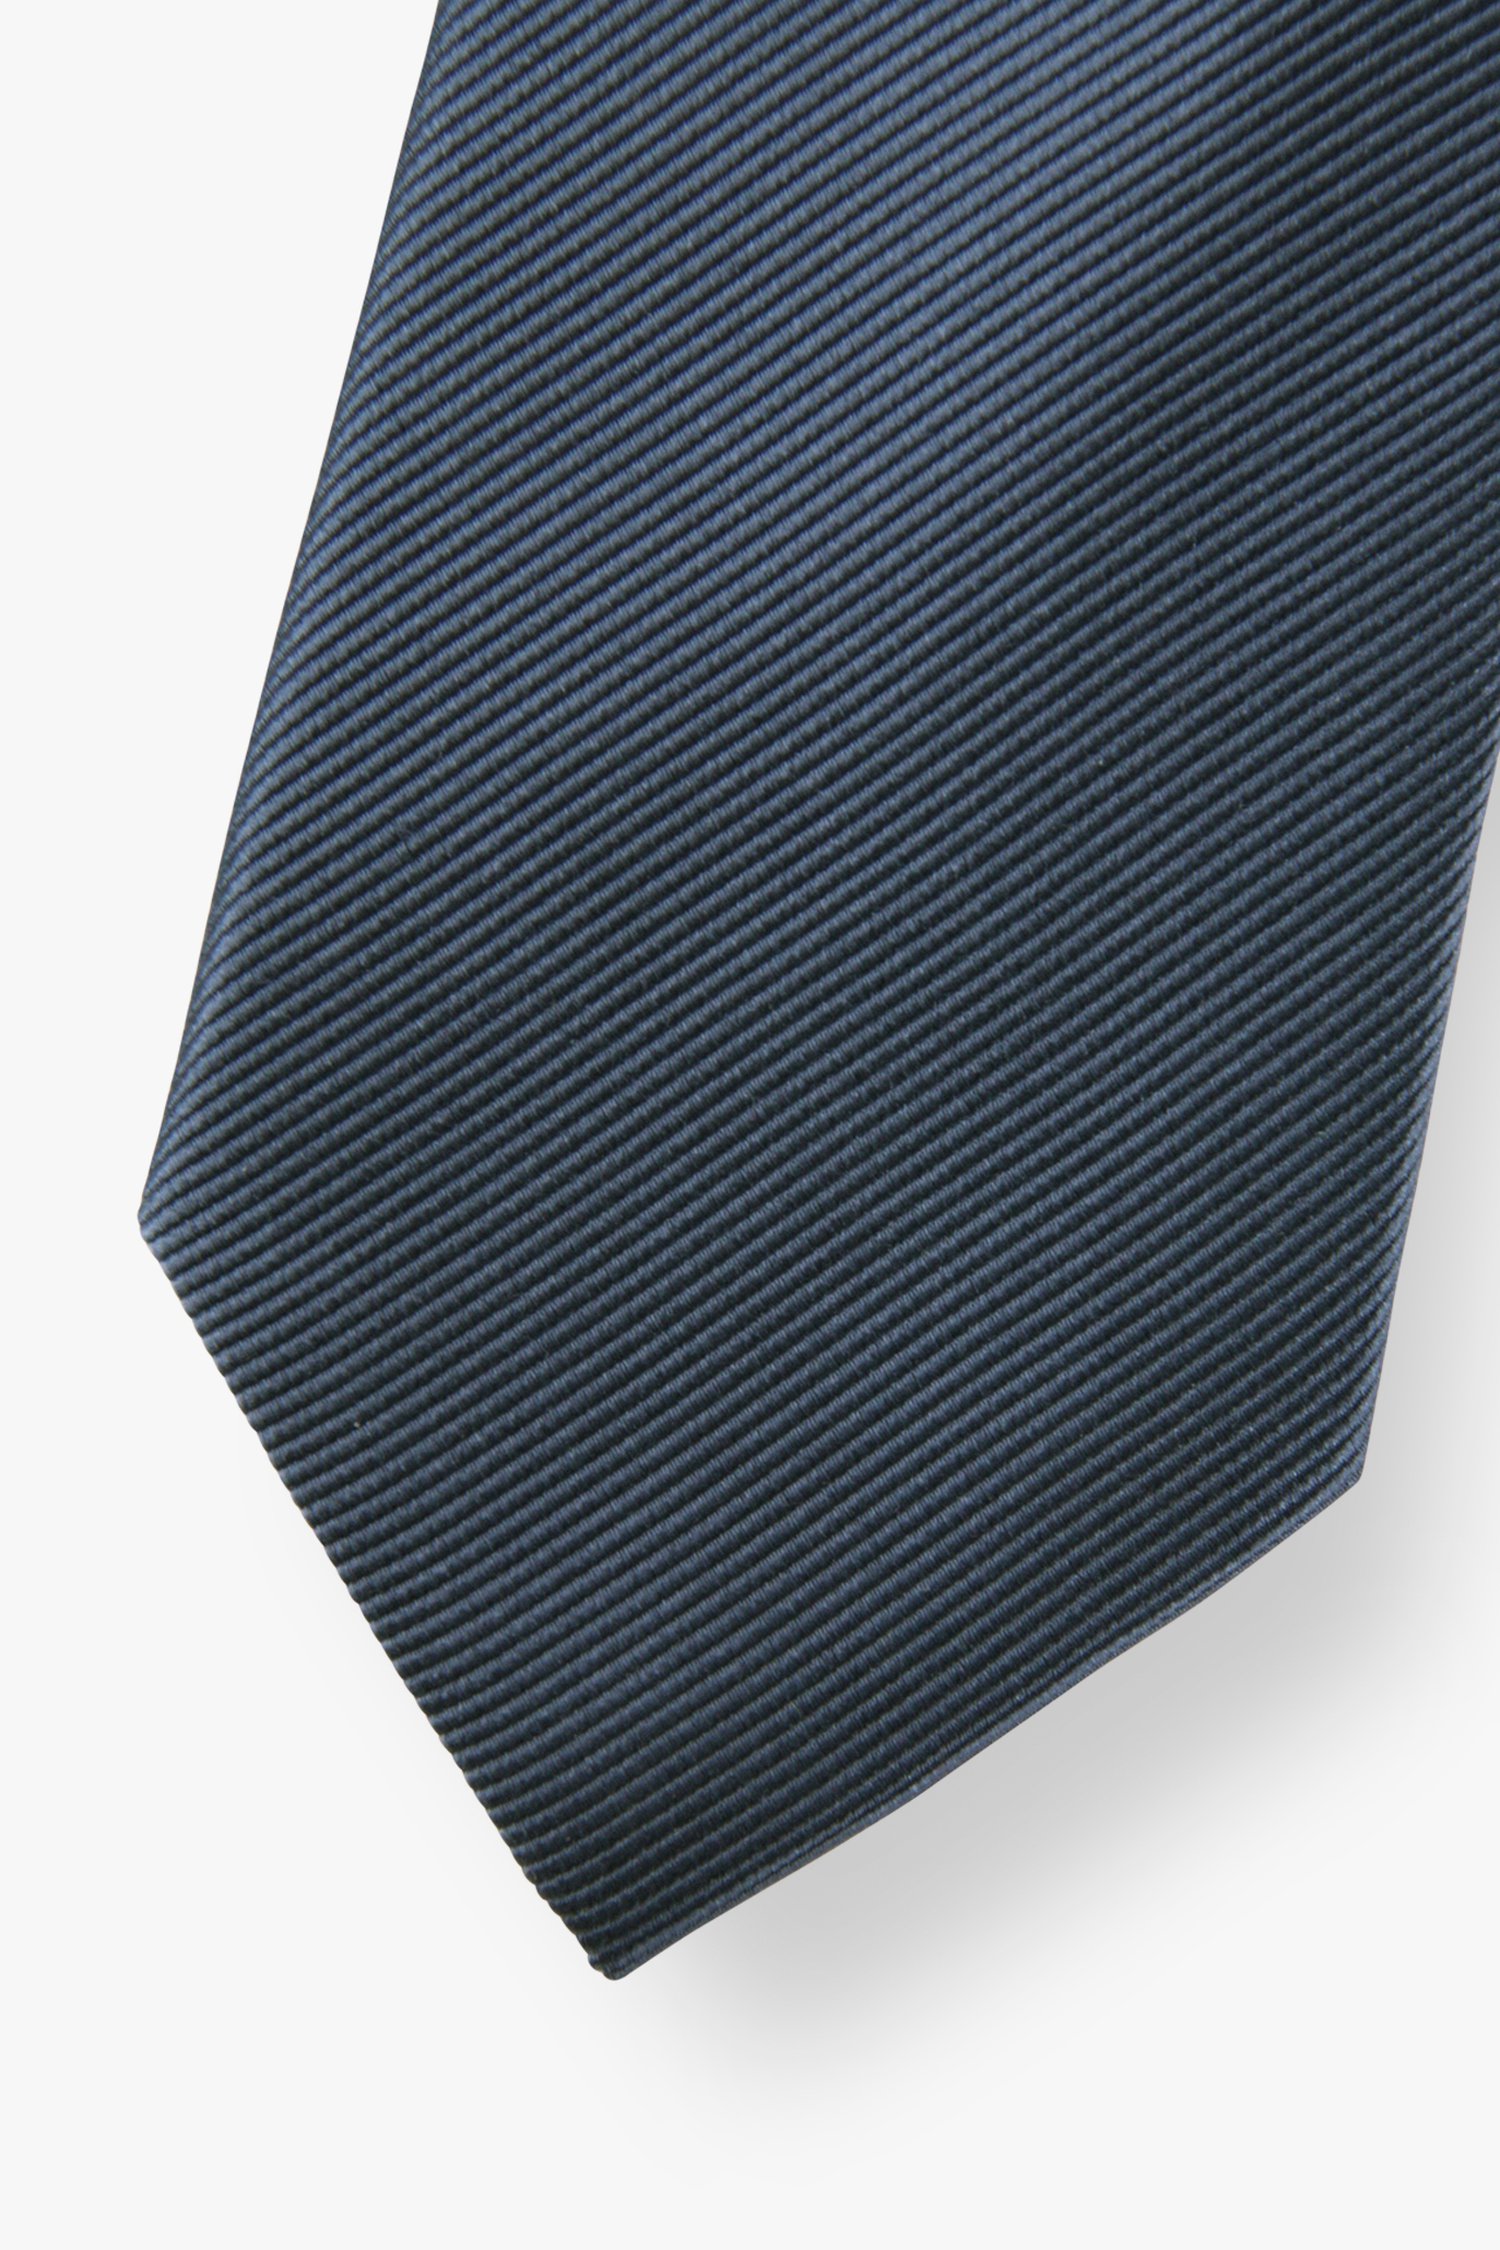 Cravate marine  de Michaelis pour Hommes